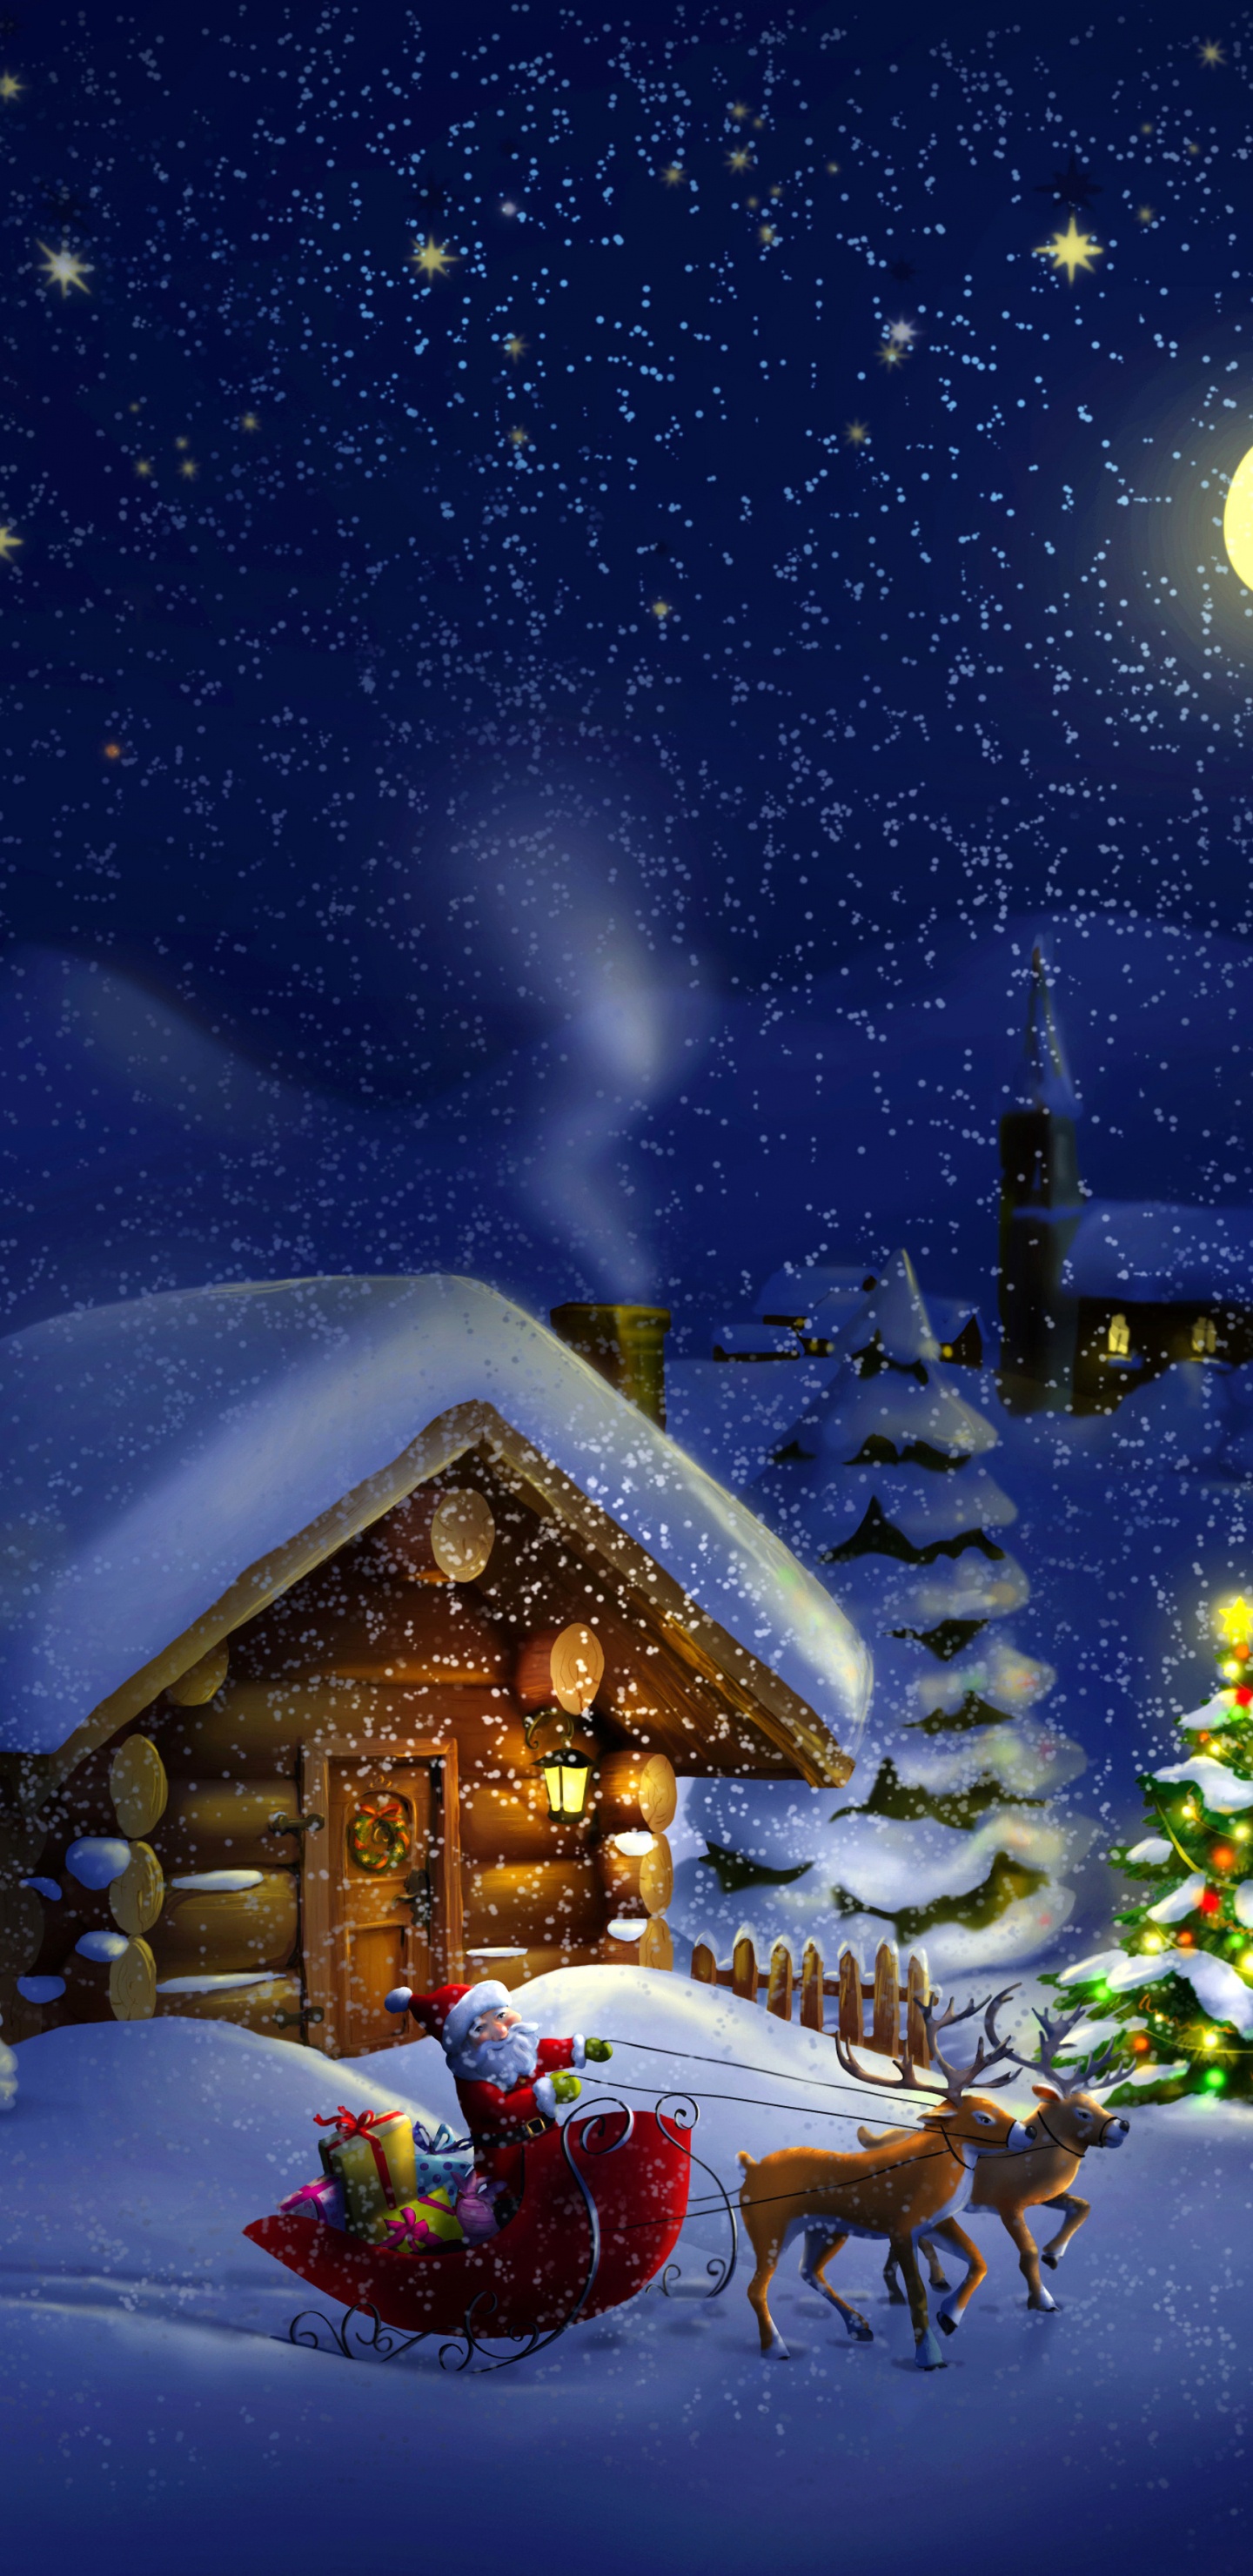 Weihnachten, Weihnachtsmann, Winter, Schnee, Nacht. Wallpaper in 1440x2960 Resolution